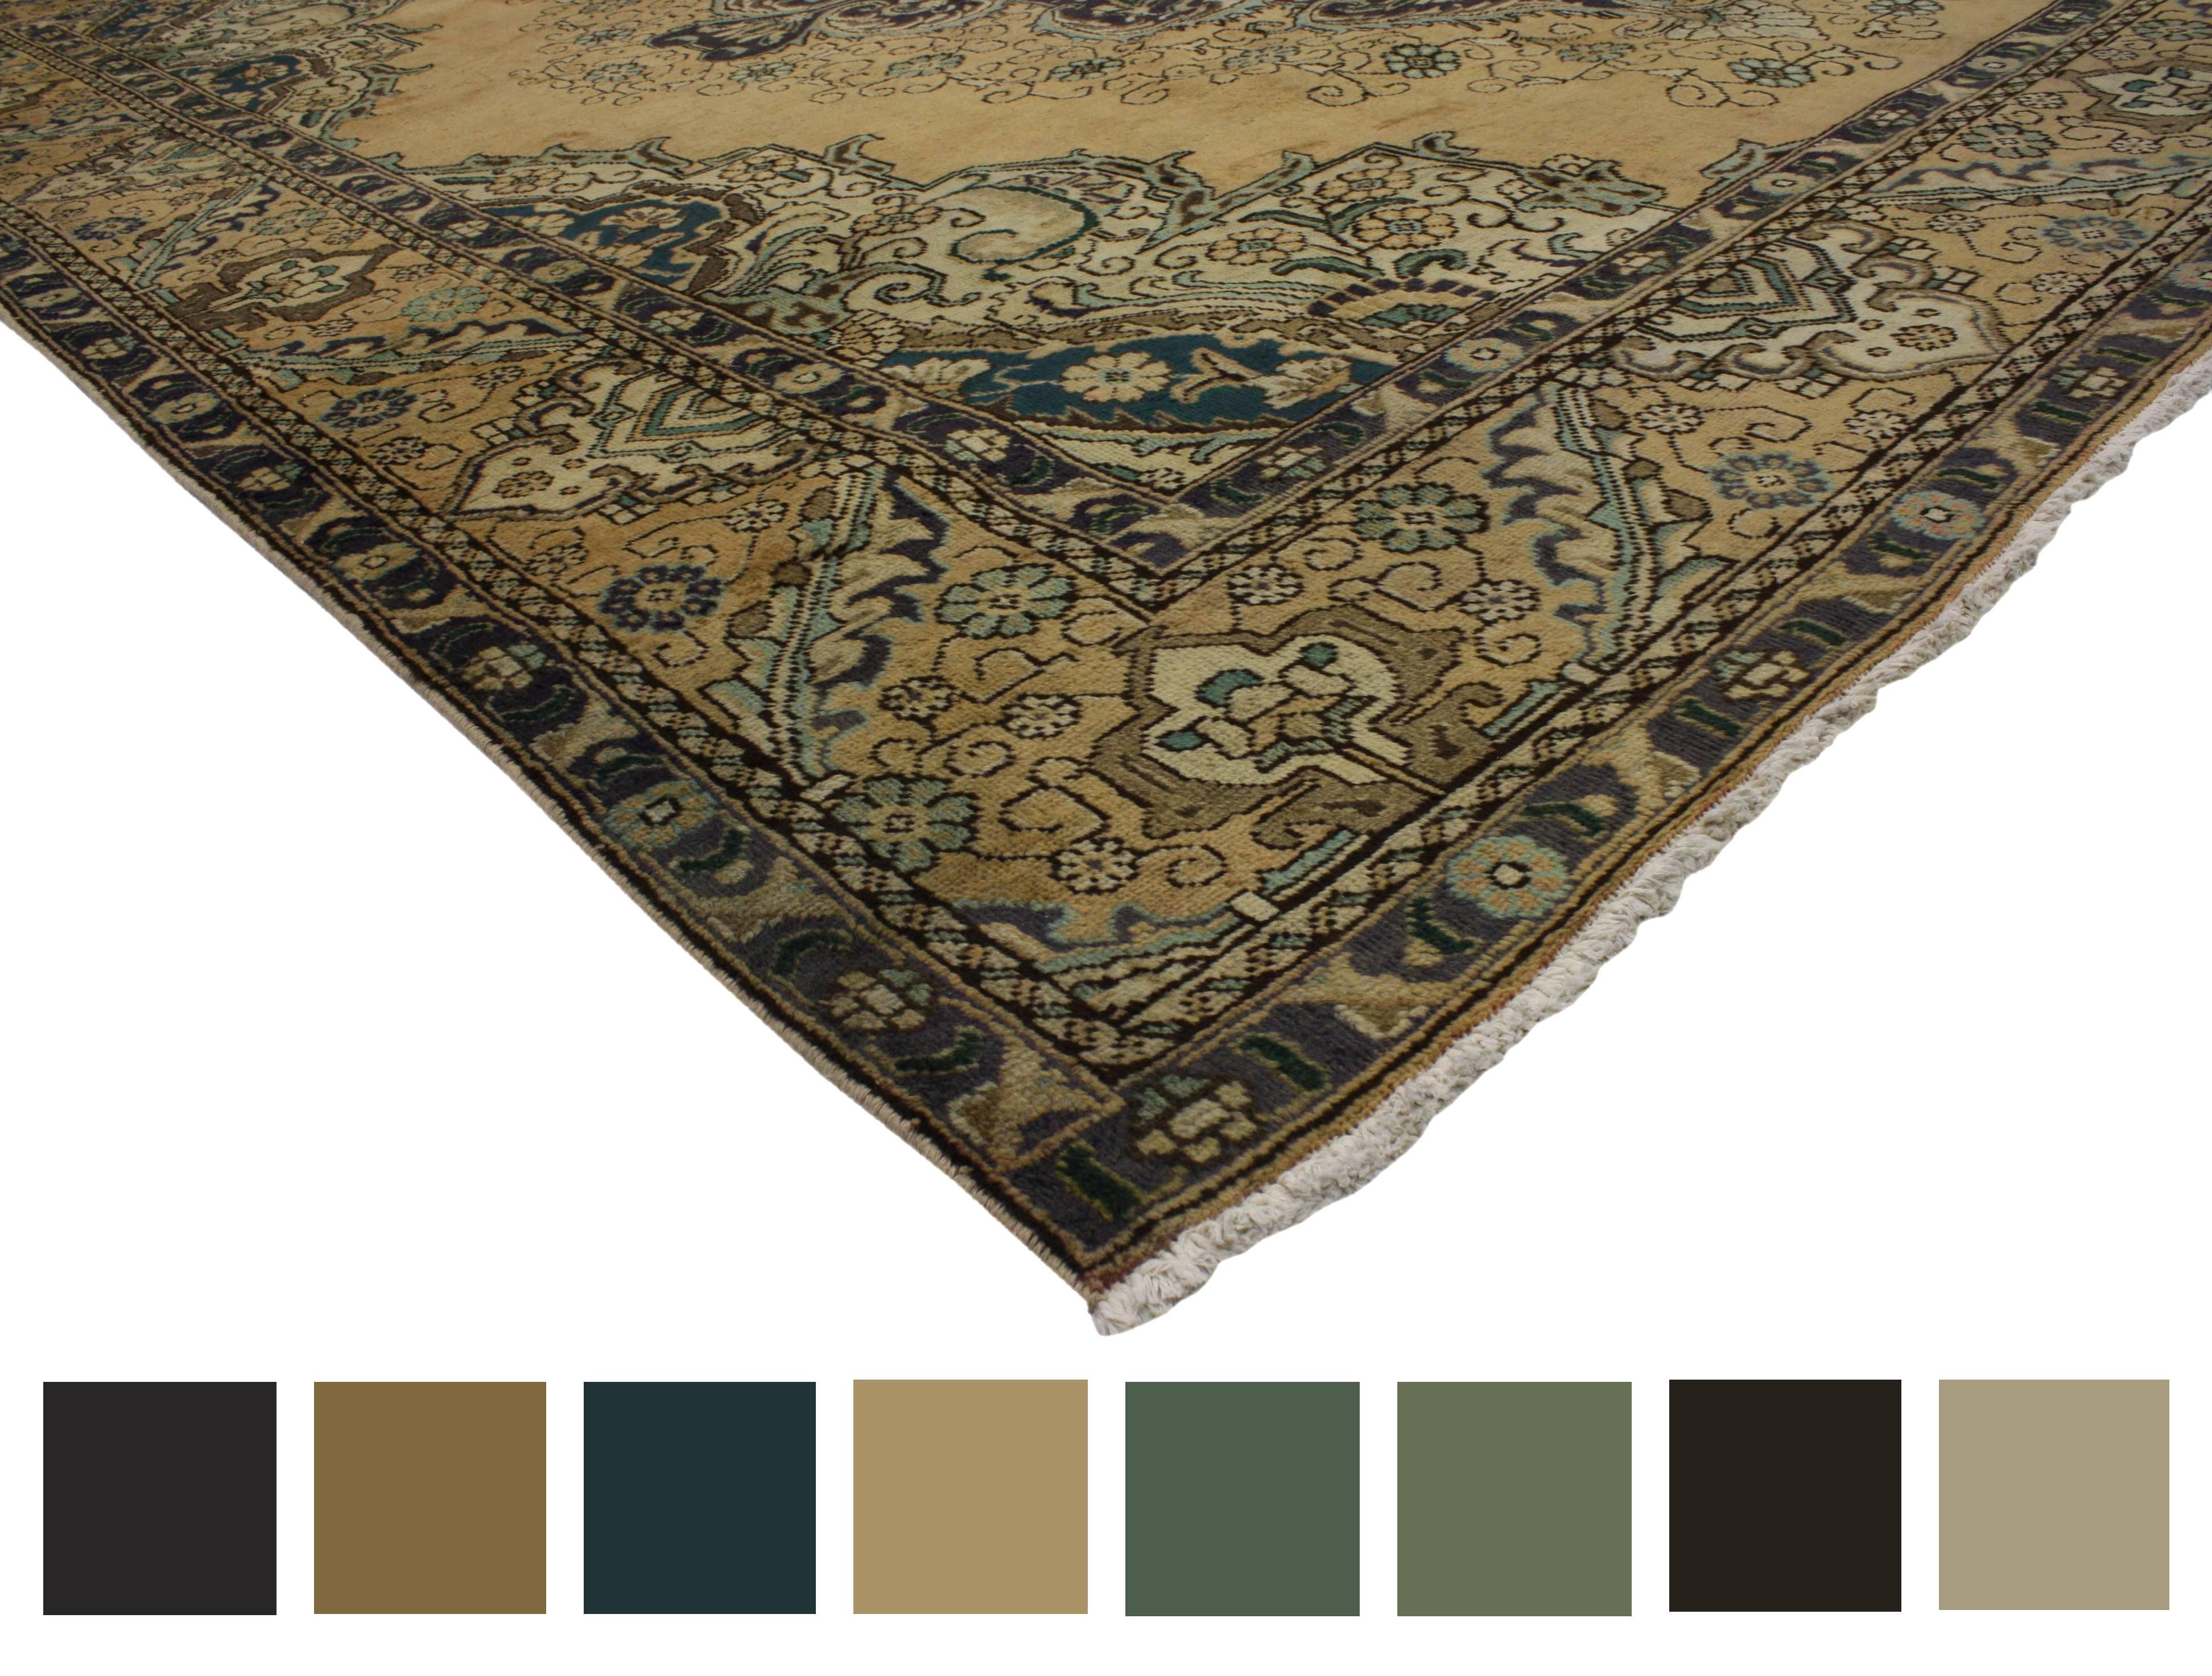 76452 Persischer Tabriz-Teppich mit neoklassischem Hollywood-Regency-Glamour. Dieser handgeknüpfte alte persische Täbriz-Teppich aus Wolle zeigt ein großformatiges Medaillon mit Höckern und Anhängern, die von einem kunstvollen Filigran aus runden